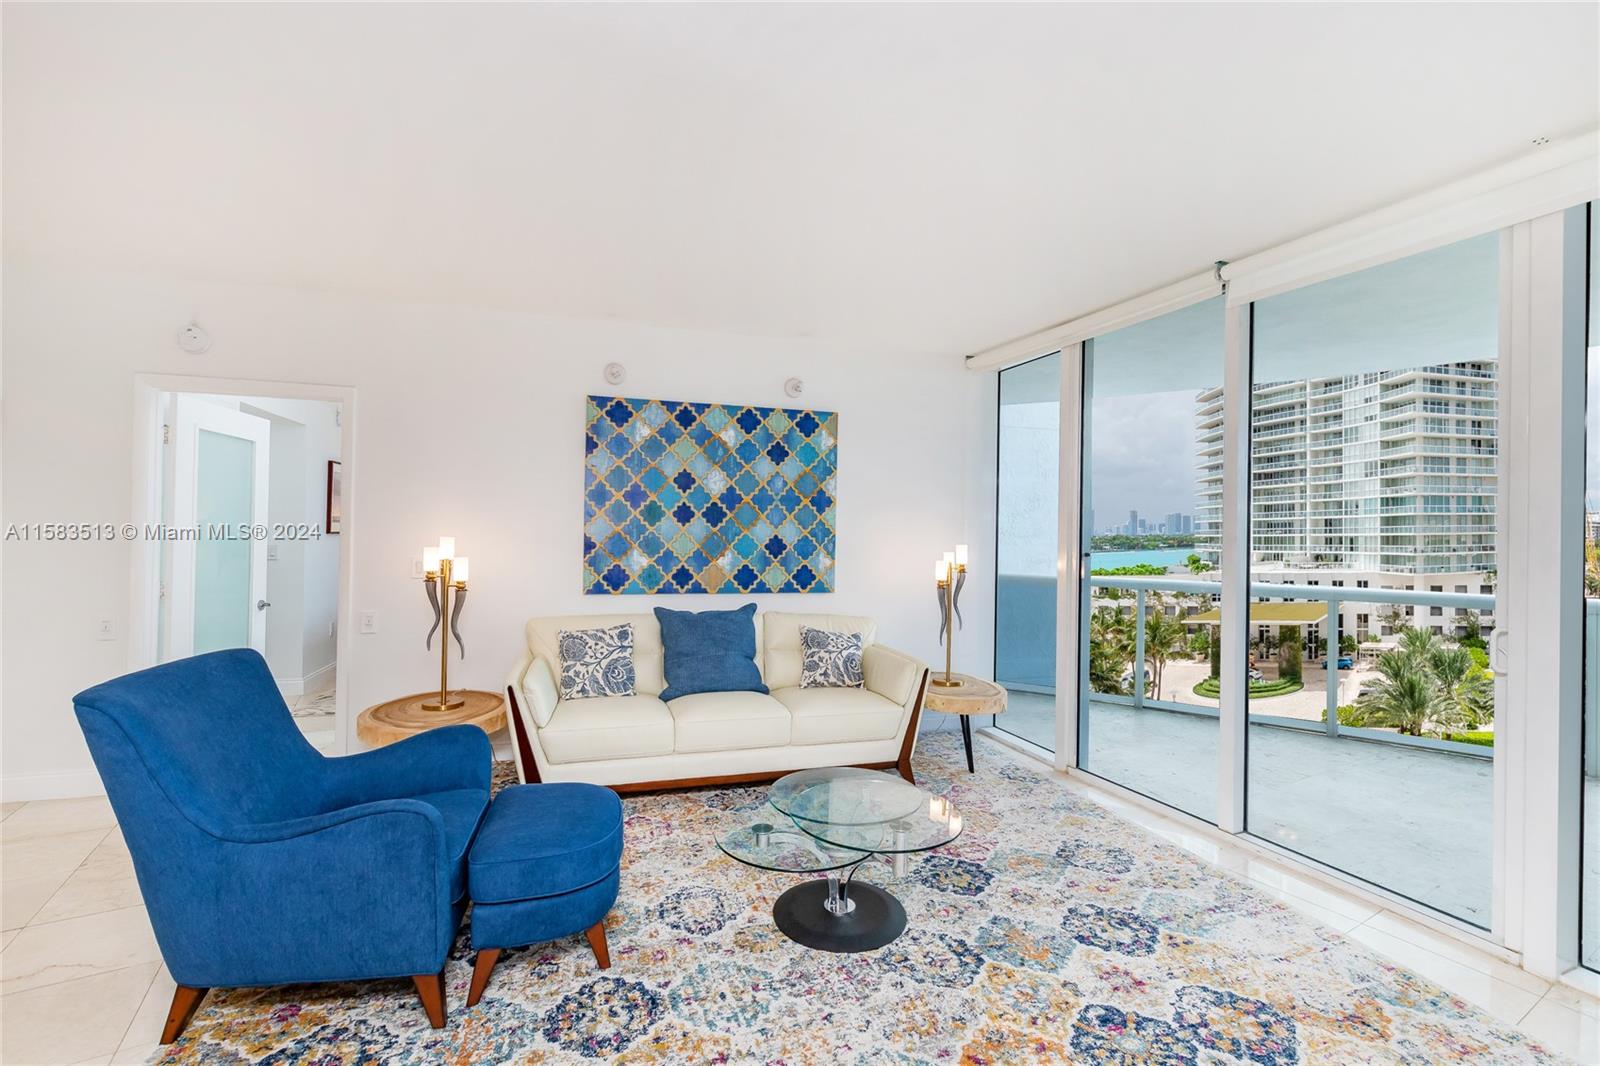 Property for Sale at 400 Alton Rd 809, Miami Beach, Miami-Dade County, Florida - Bedrooms: 2 
Bathrooms: 2  - $1,299,000